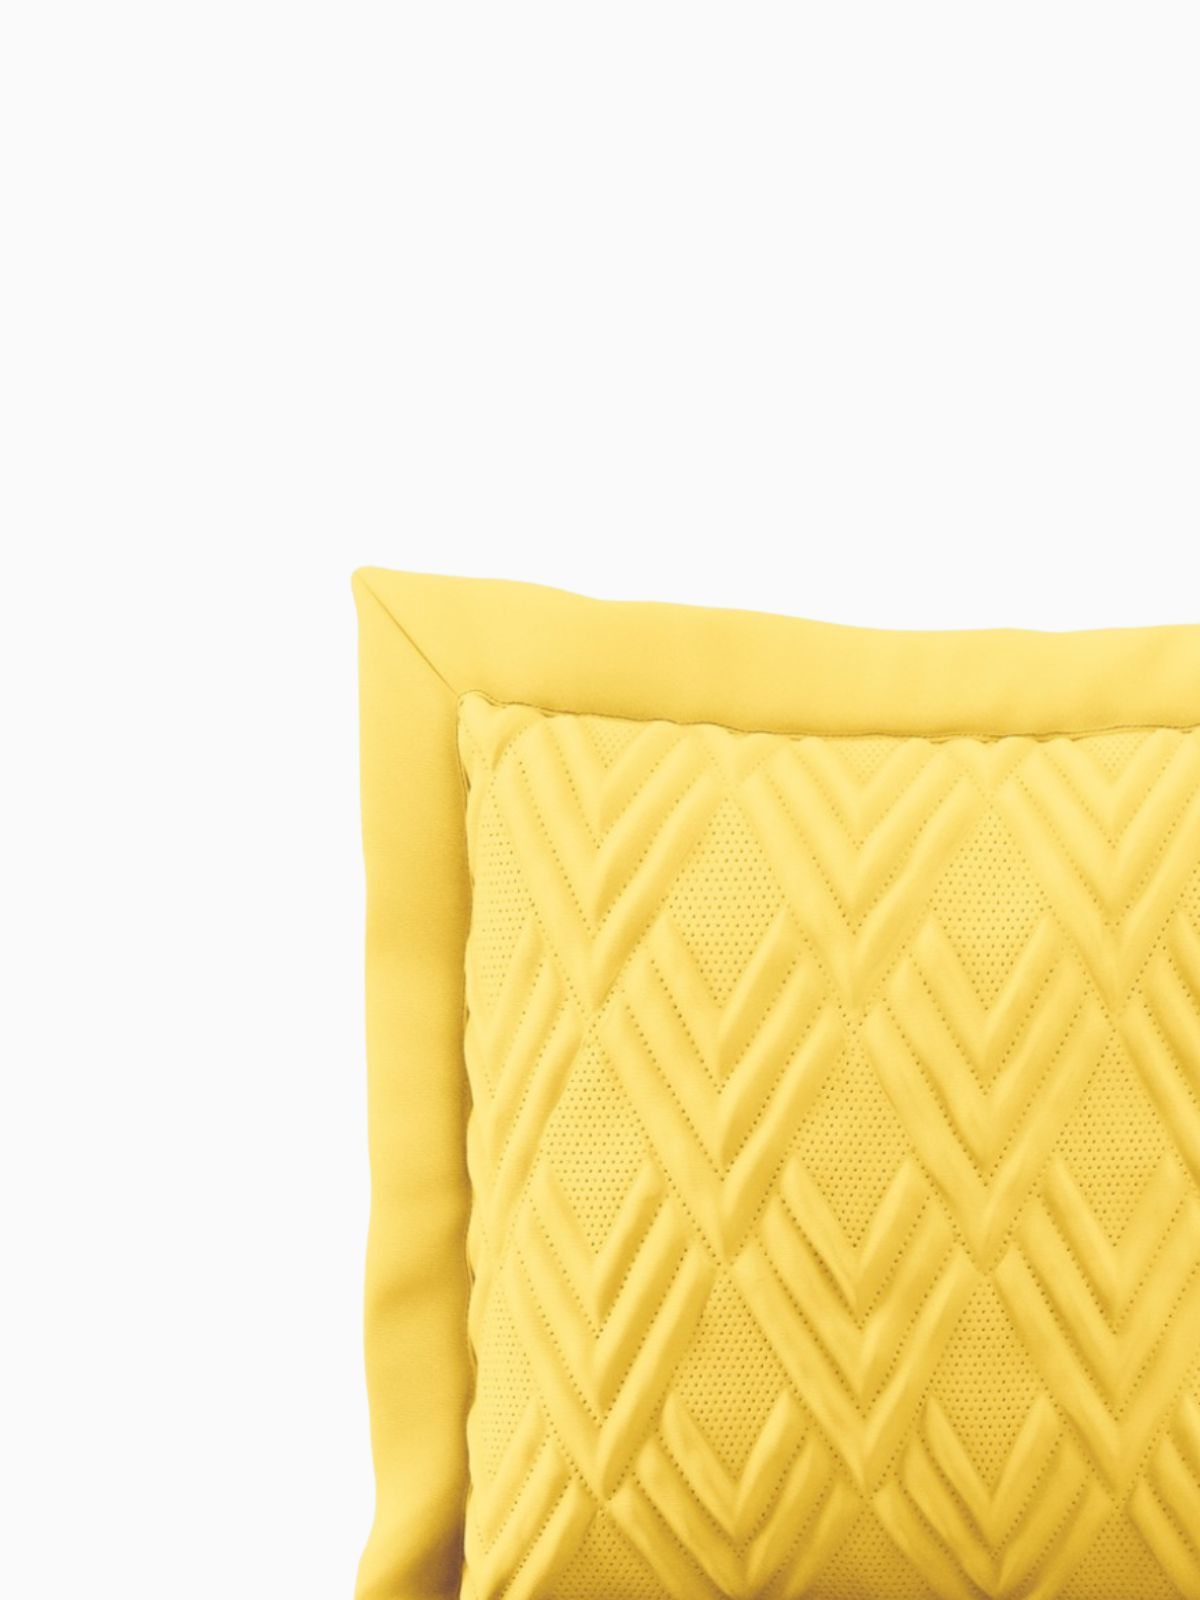 Cuscino decorativo Ophelia in colore giallo 45x45 cm.-5